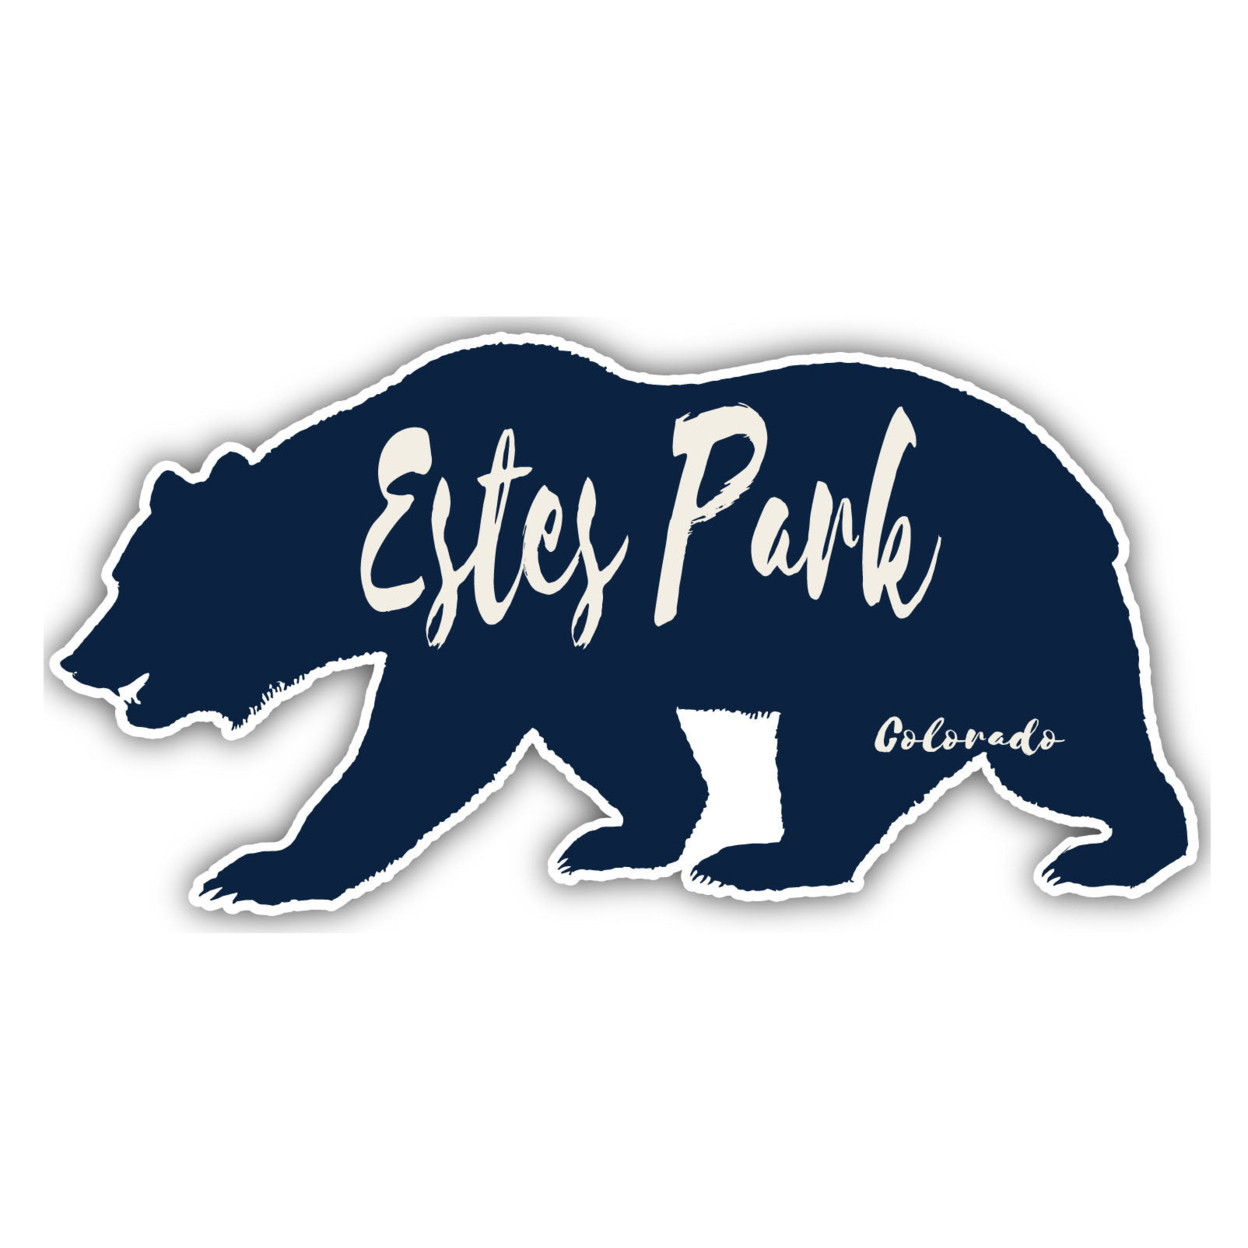 Estes Park Colorado Souvenir Decorative Stickers (Choose Theme And Size) - 4-Pack, 2-Inch, Bear